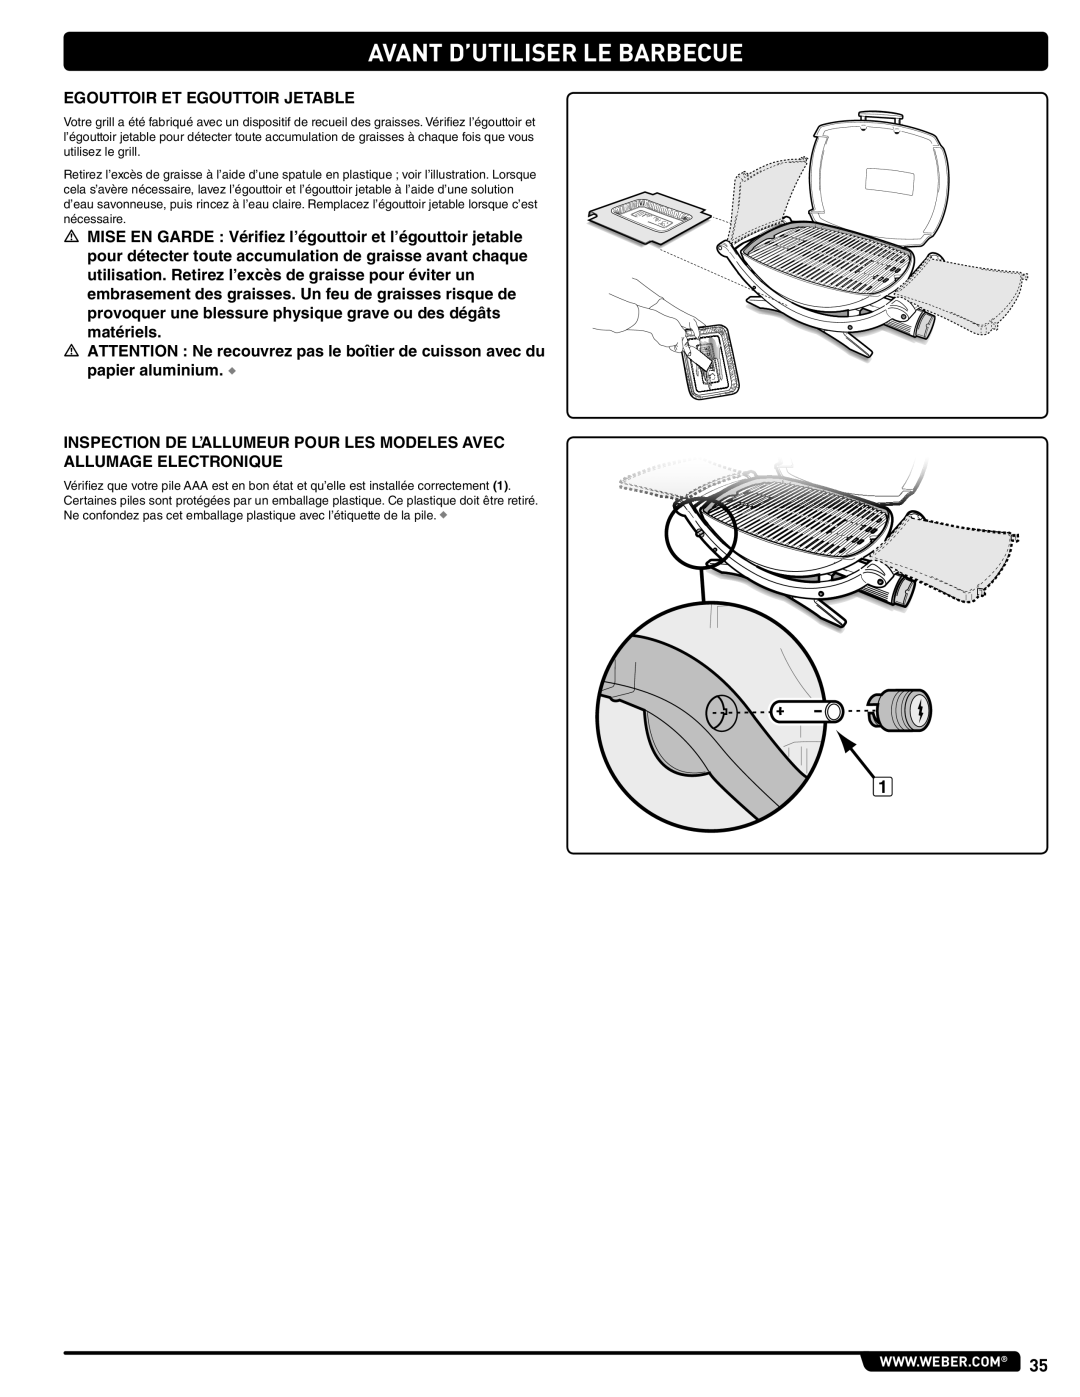 Weber 827020, 100, LP GAS GRILL, 220, 200, 120 instruction manual Avant D’Utiliser Le Barbecue 